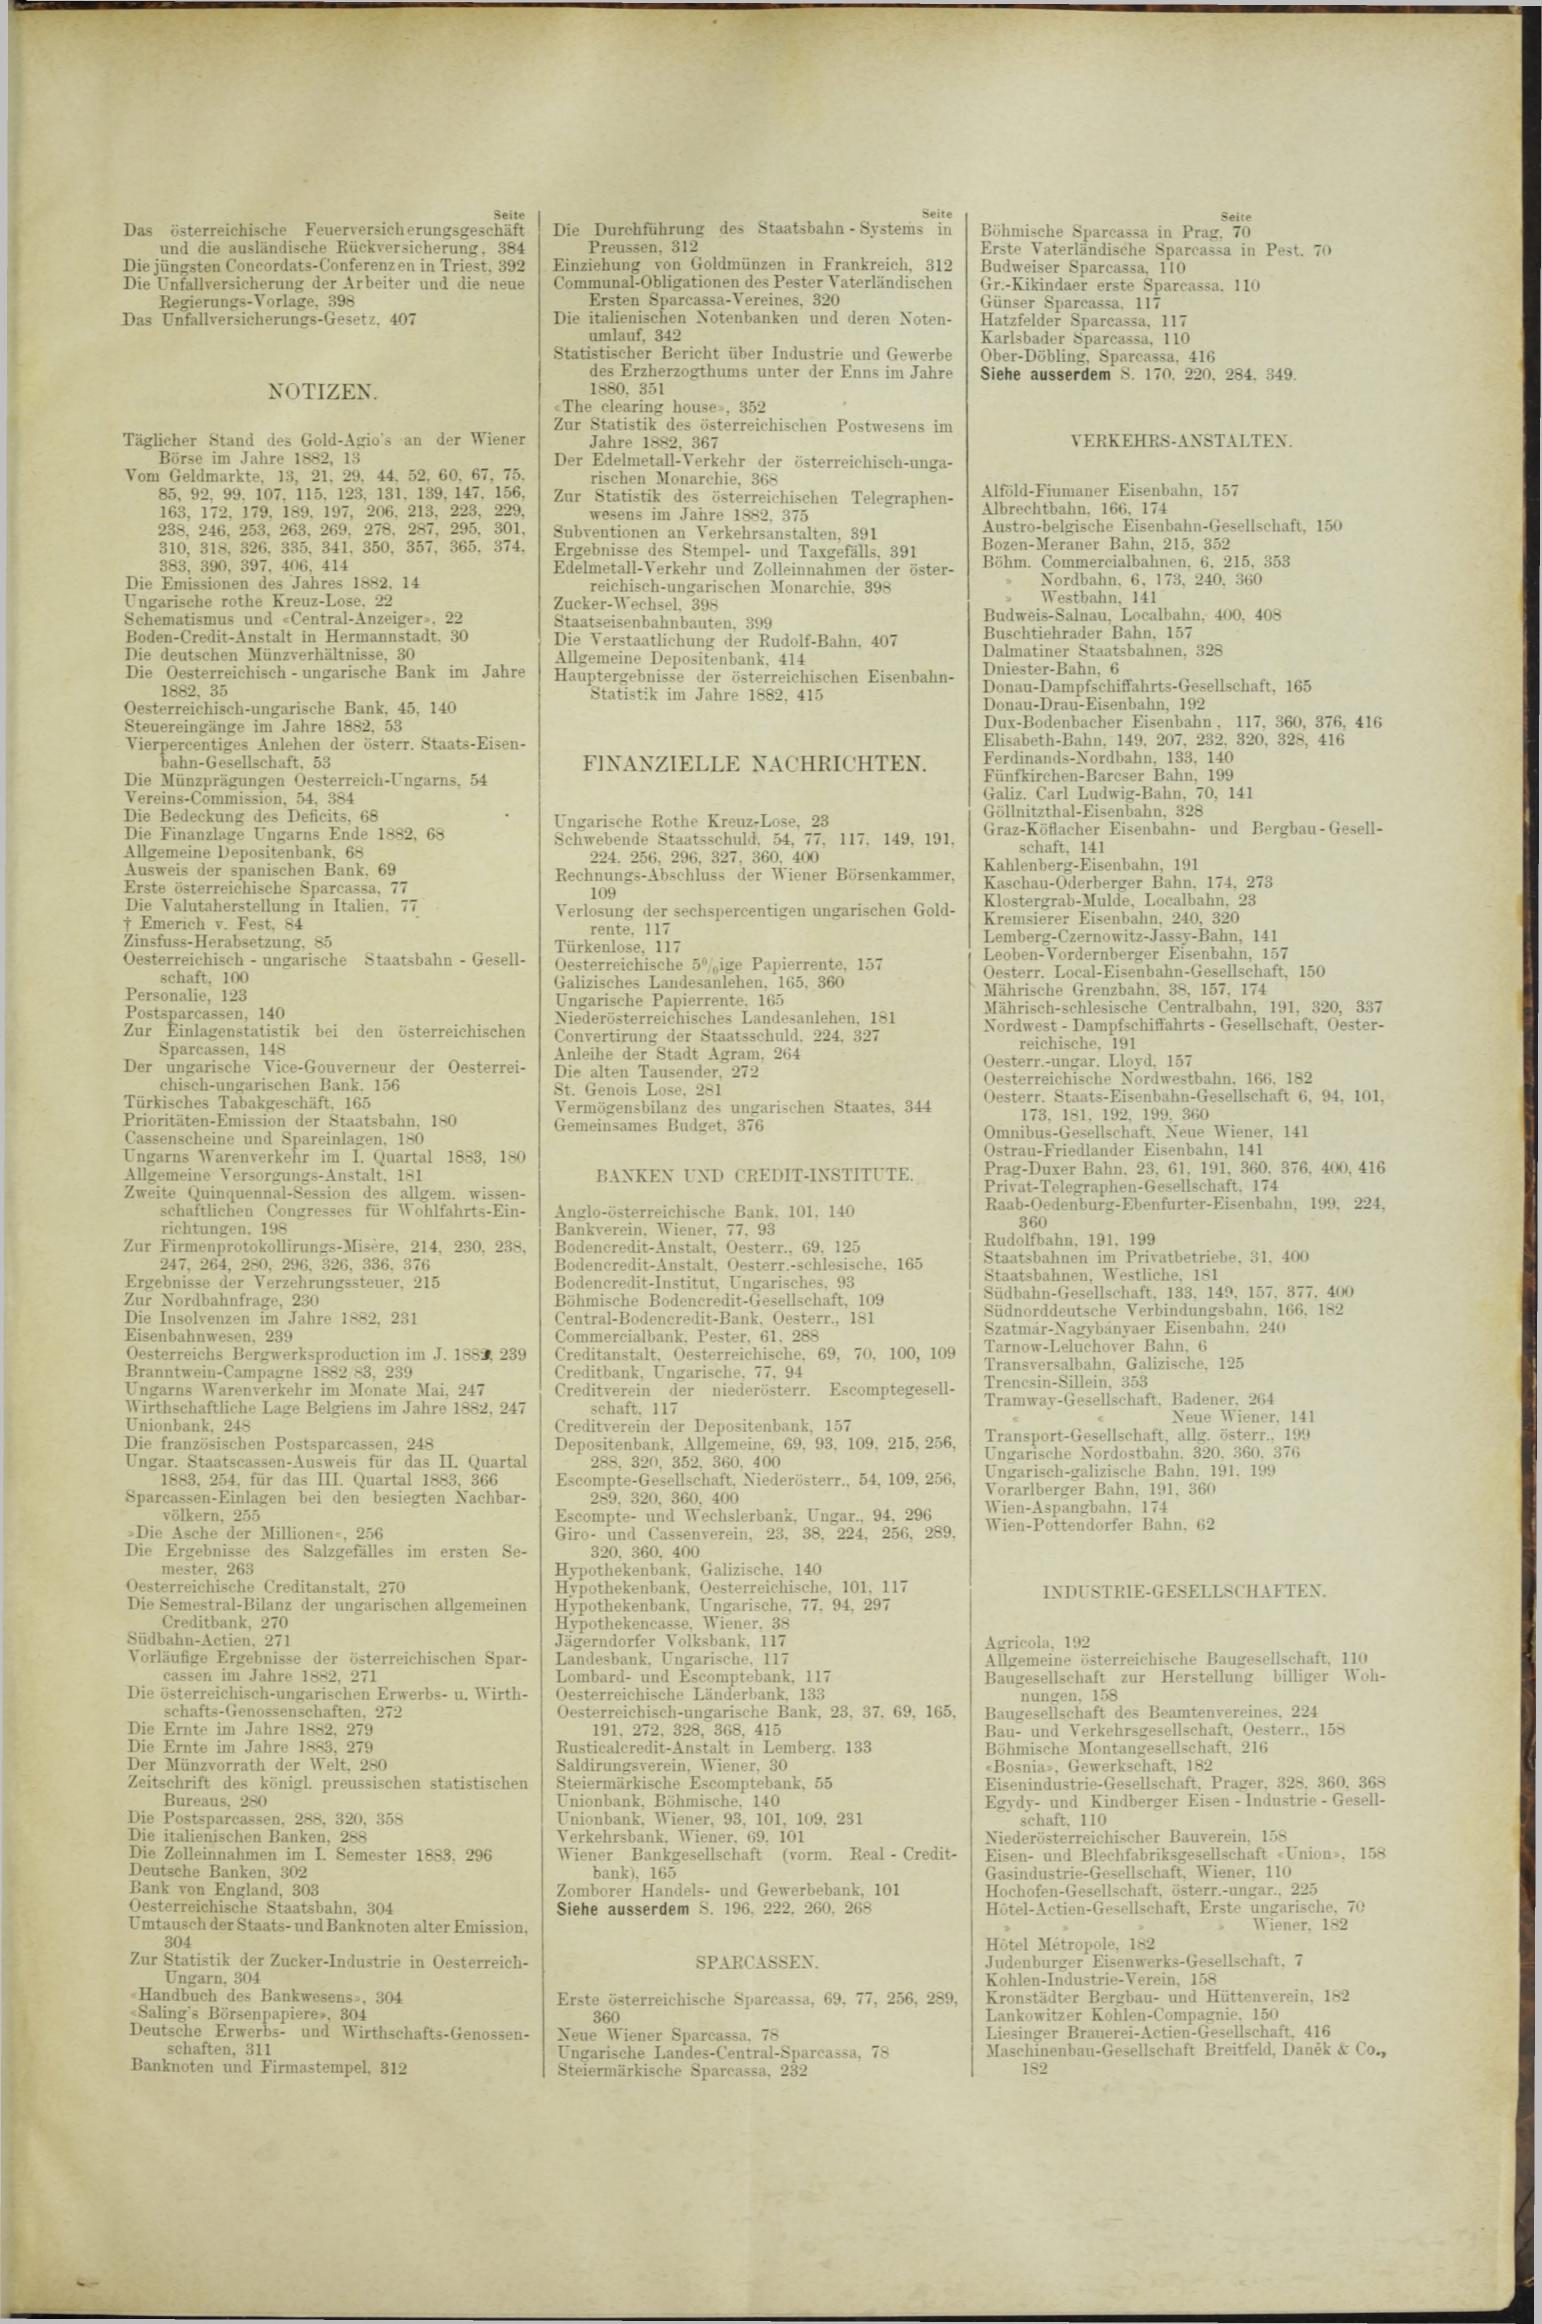 Der Tresor 20.09.1883 - Seite 11